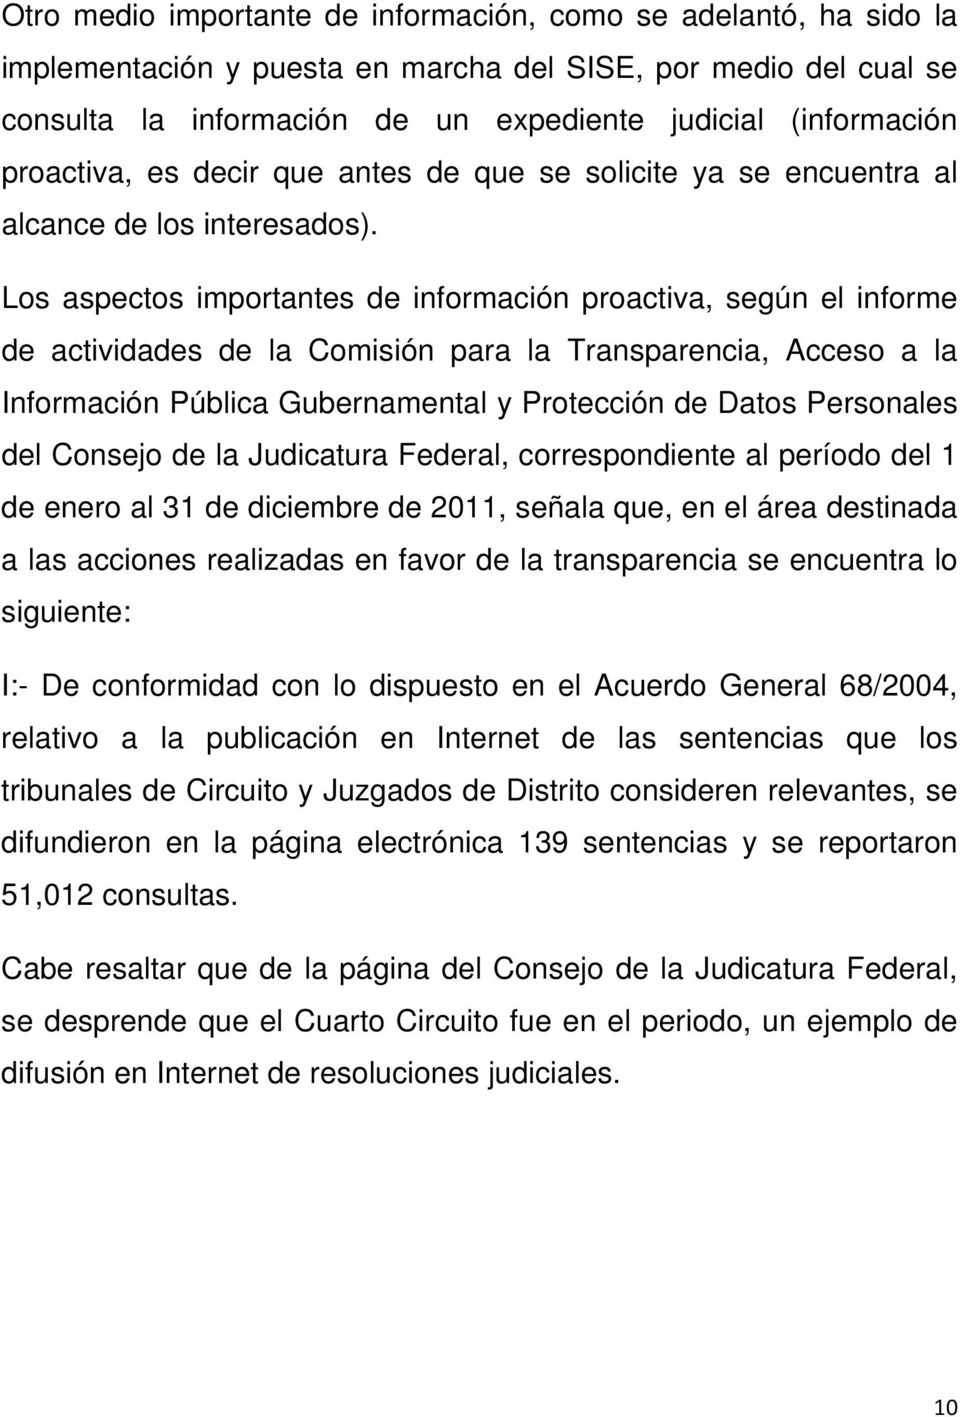 Los aspectos importantes de información proactiva, según el informe de actividades de la Comisión para la Transparencia, Acceso a la Información Pública Gubernamental y Protección de Datos Personales